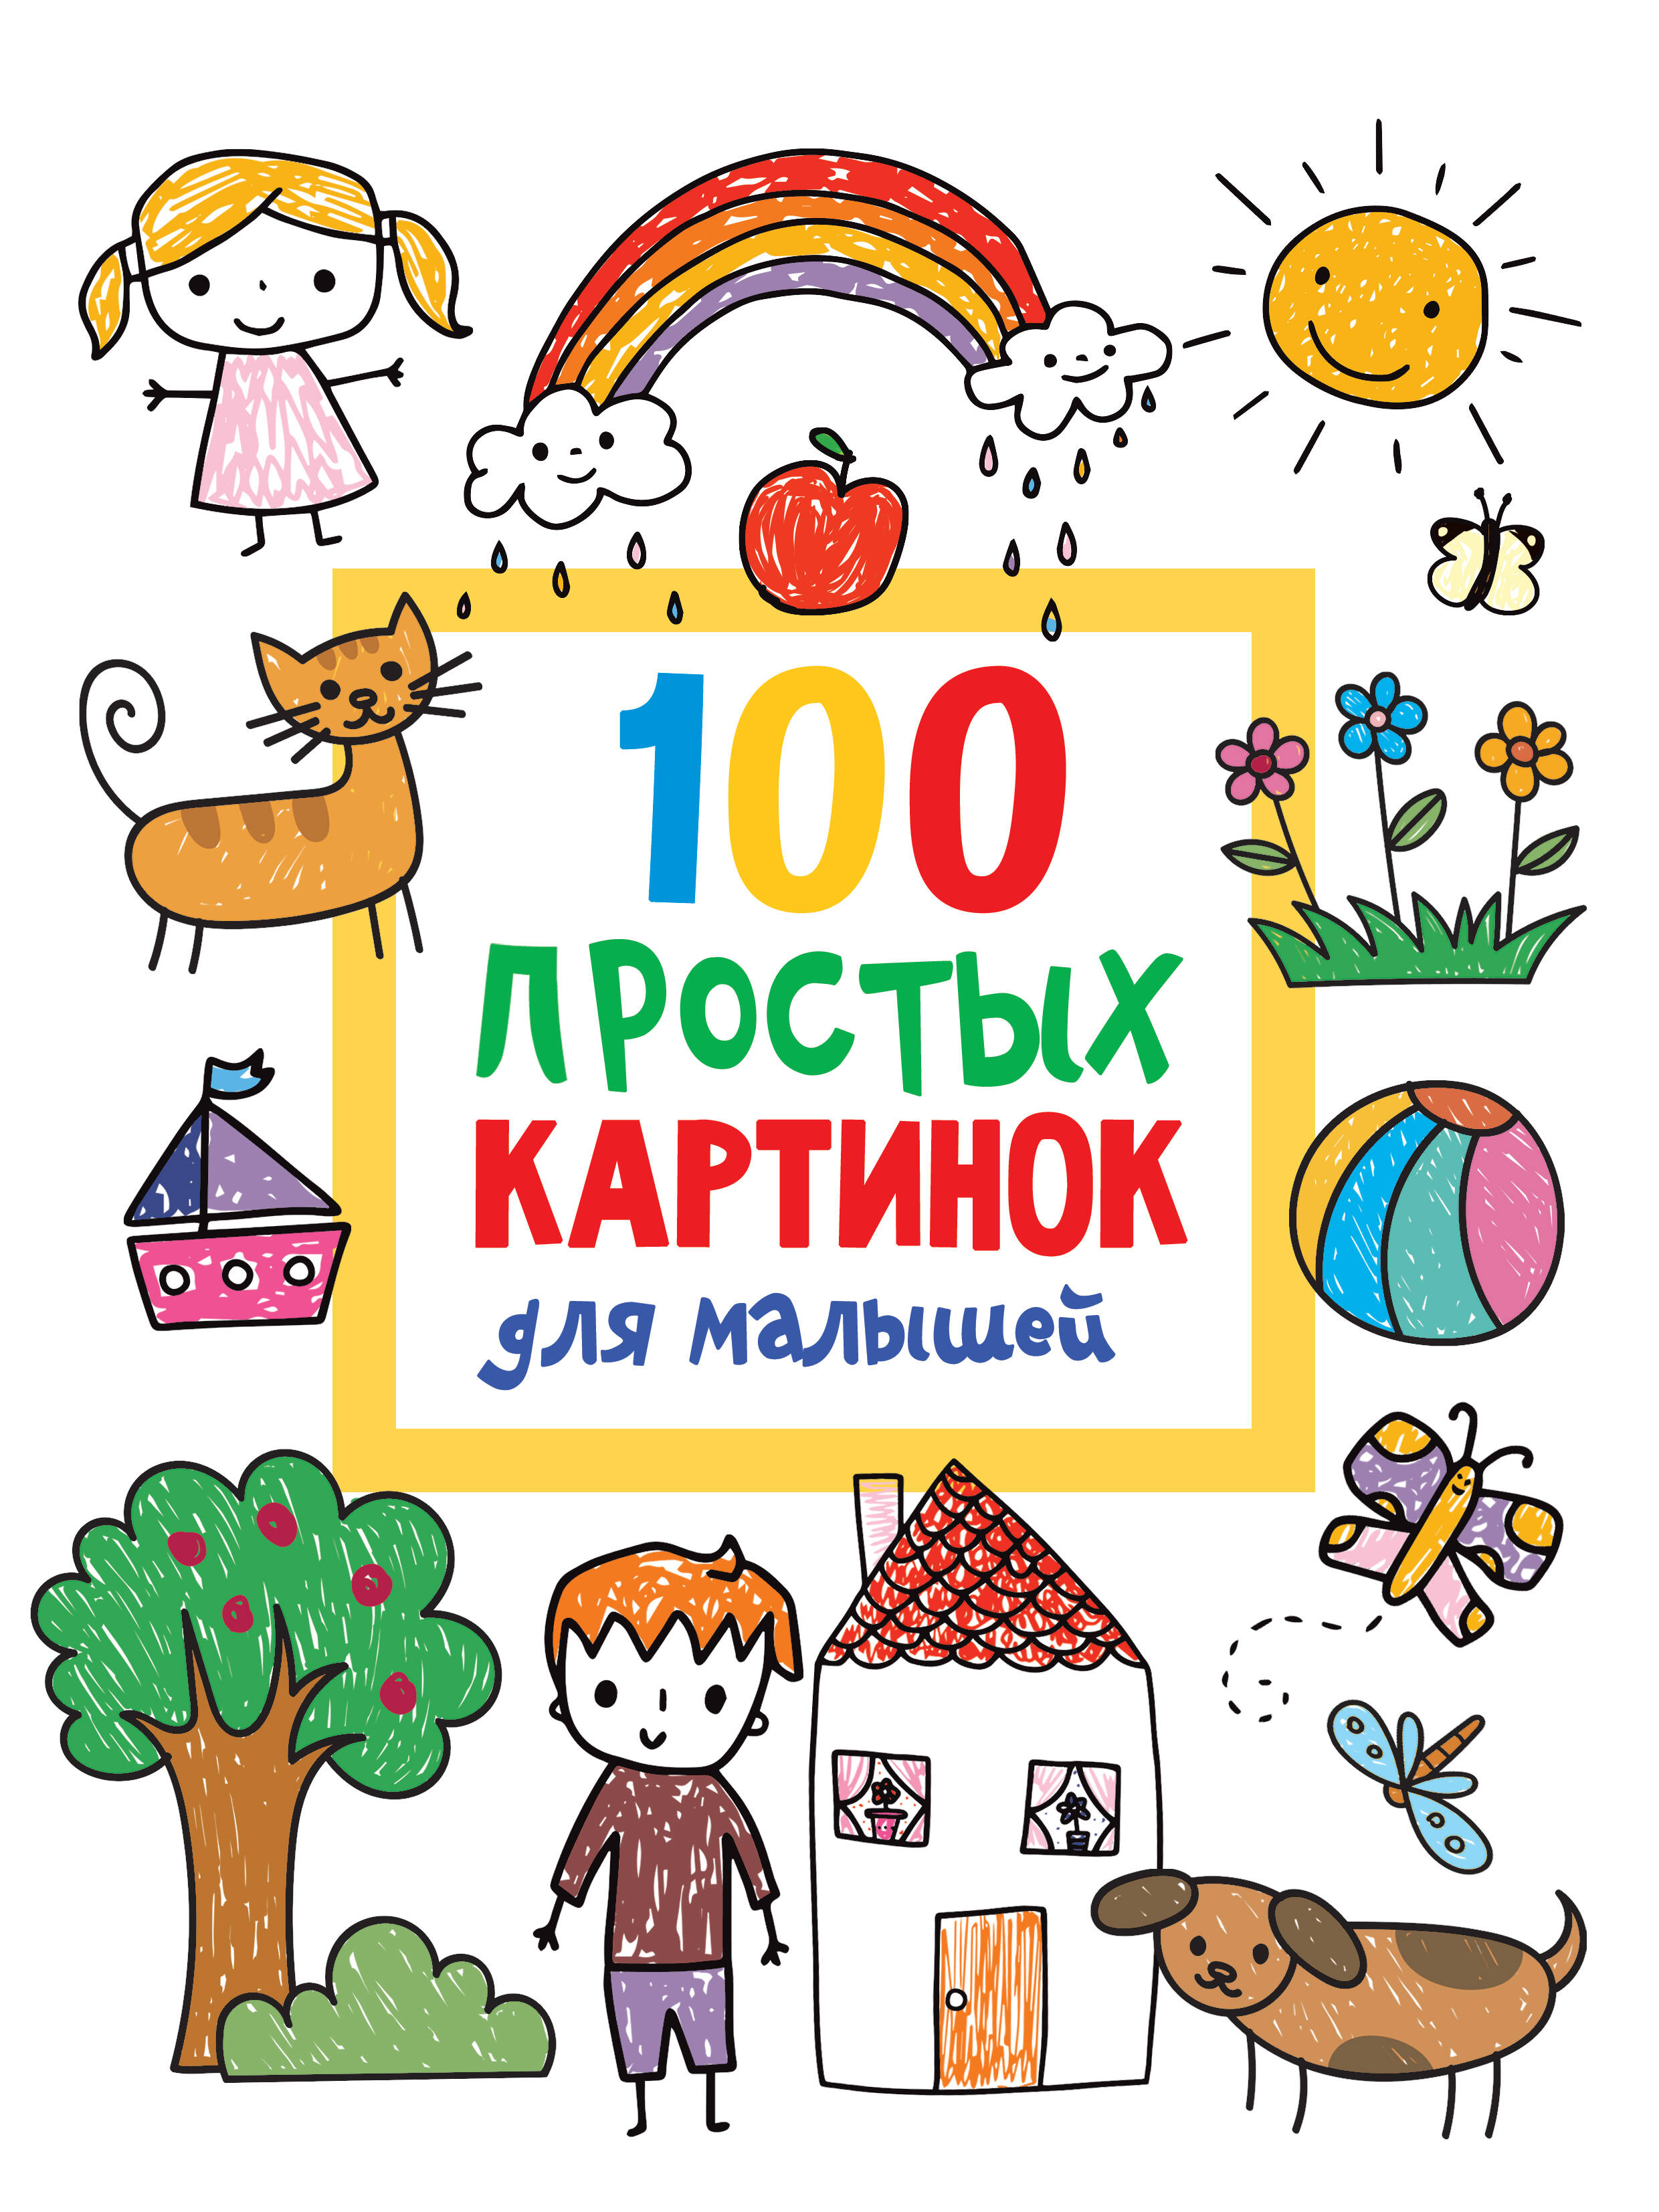 Дмитриева Валентина Геннадьевна 100 простых картинок для малышей - страница 0